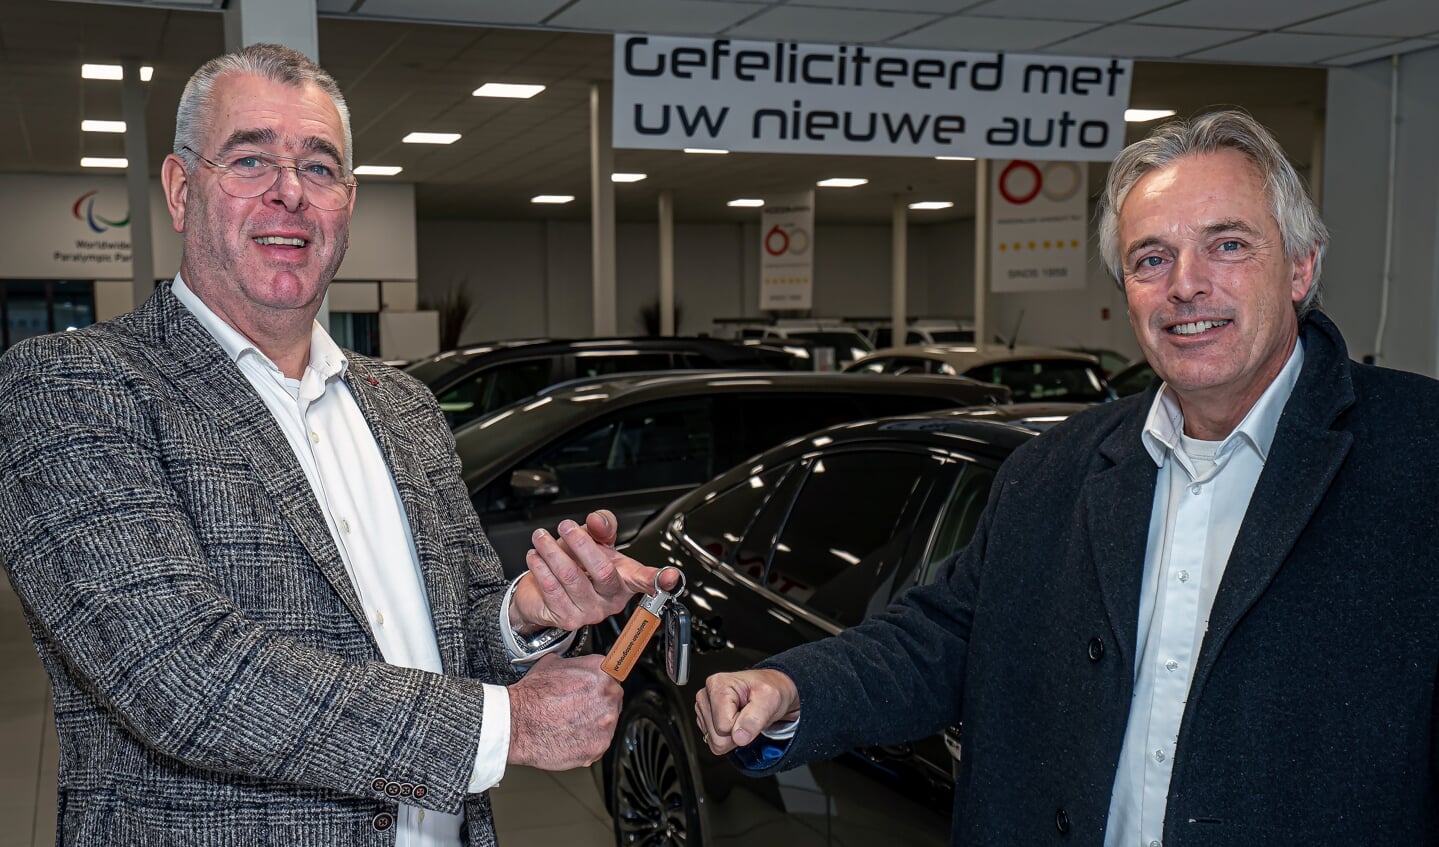 Kooijman's  1e Waterstofauto naar VHL Wethouder Huib Zevenhuizen